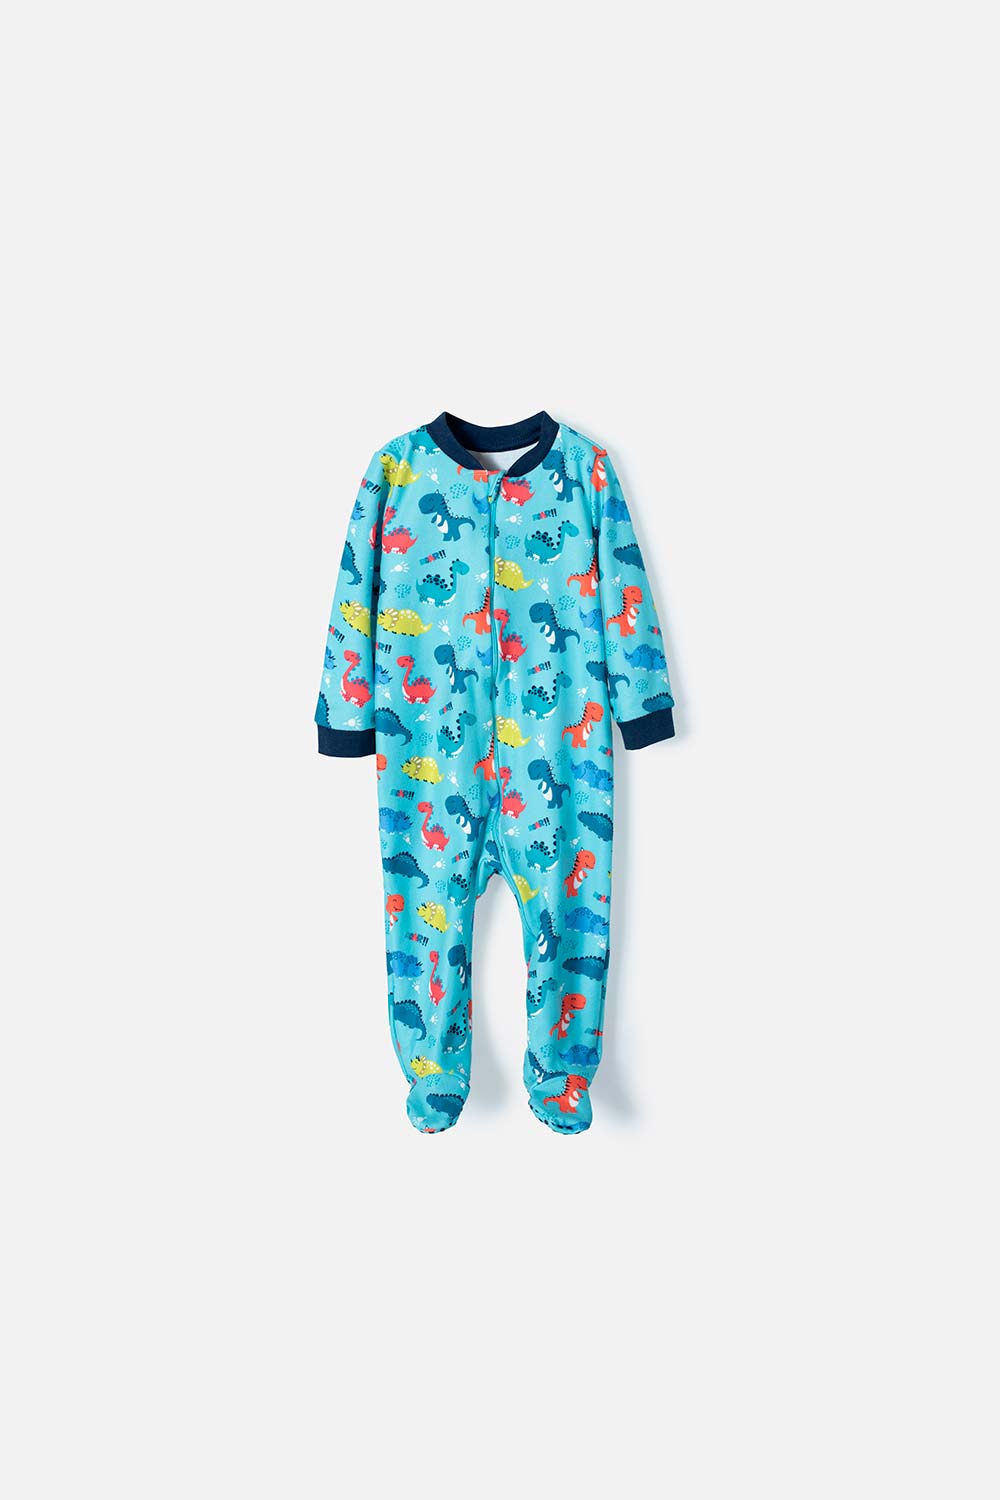 Pijama de bebé con estampado de animales